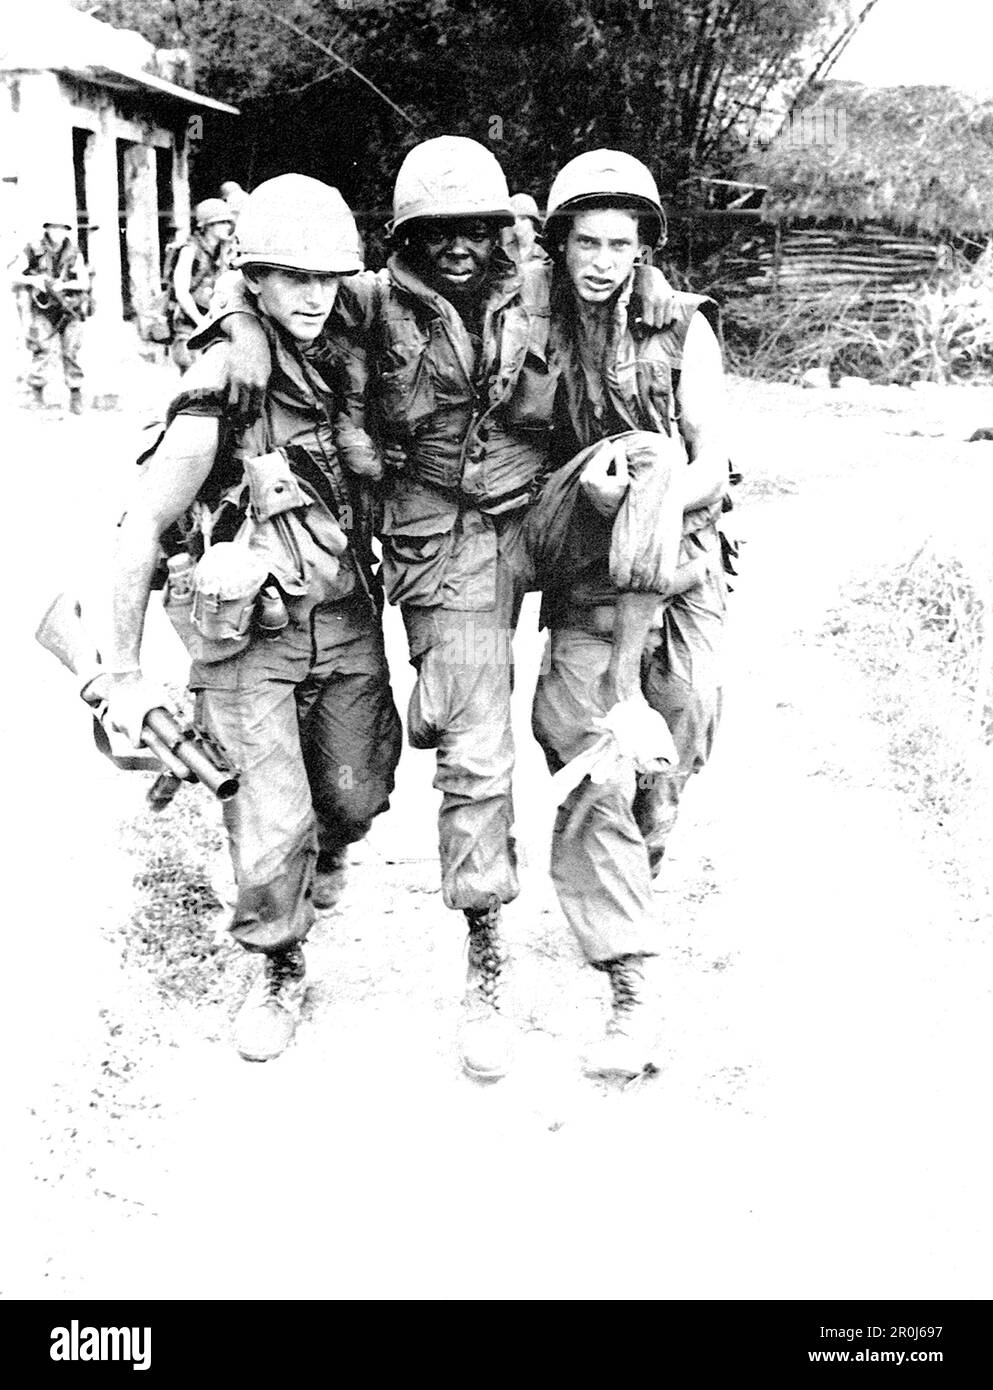 PFC Mauro, PFC carter e SP4 Widmer (carter si è sparato nel piede con una pistola .45 durante il massacro di My Lai.) Foto Stock